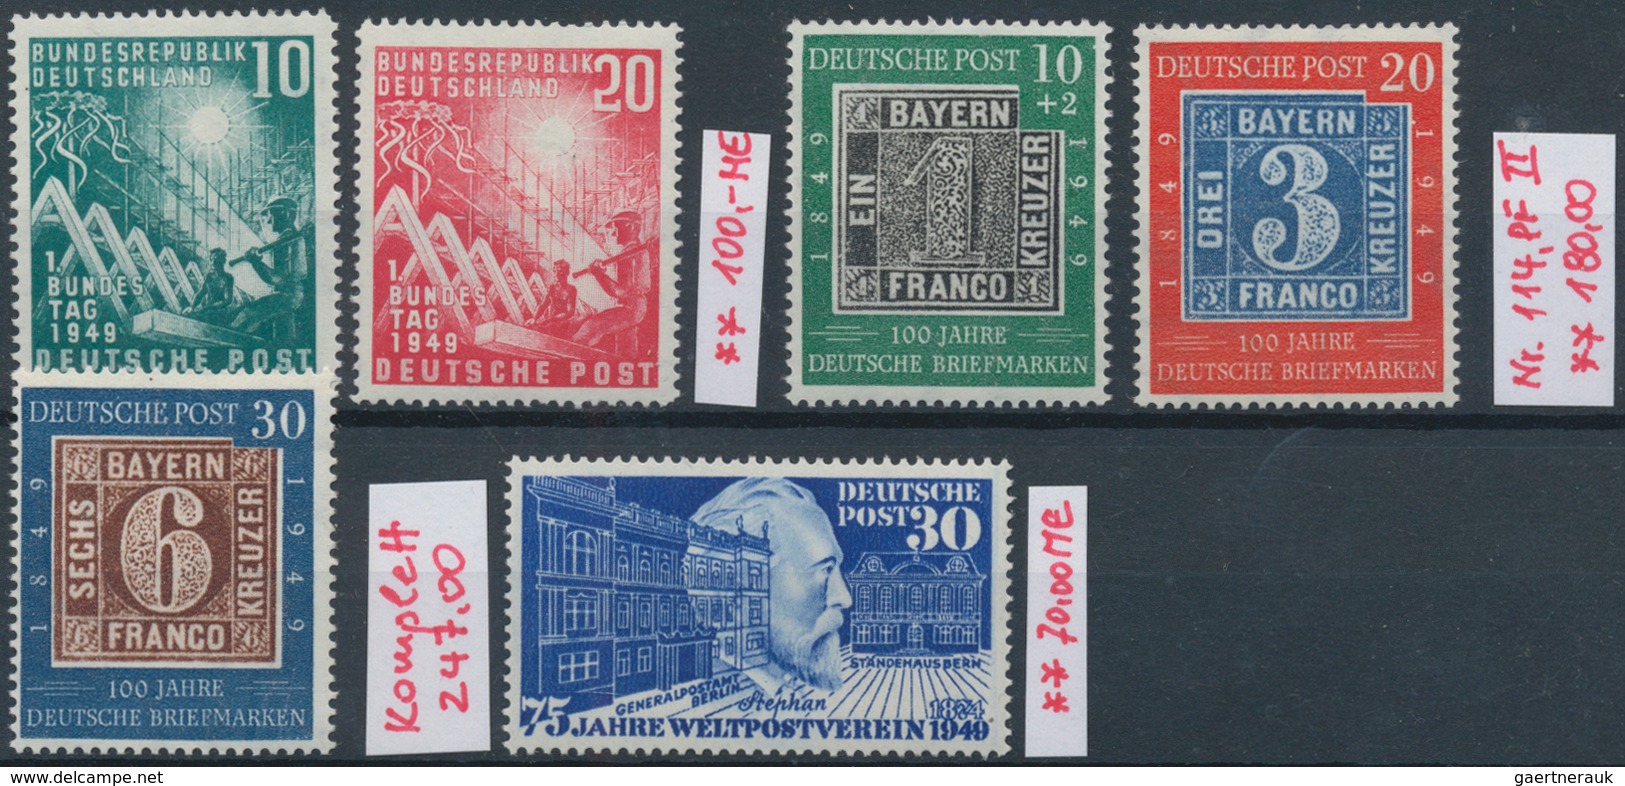 Bundesrepublik Deutschland: 1949/1956, Meist Postfrischer, Teils Auch Gestempelter Bestand Auf Steck - Sammlungen